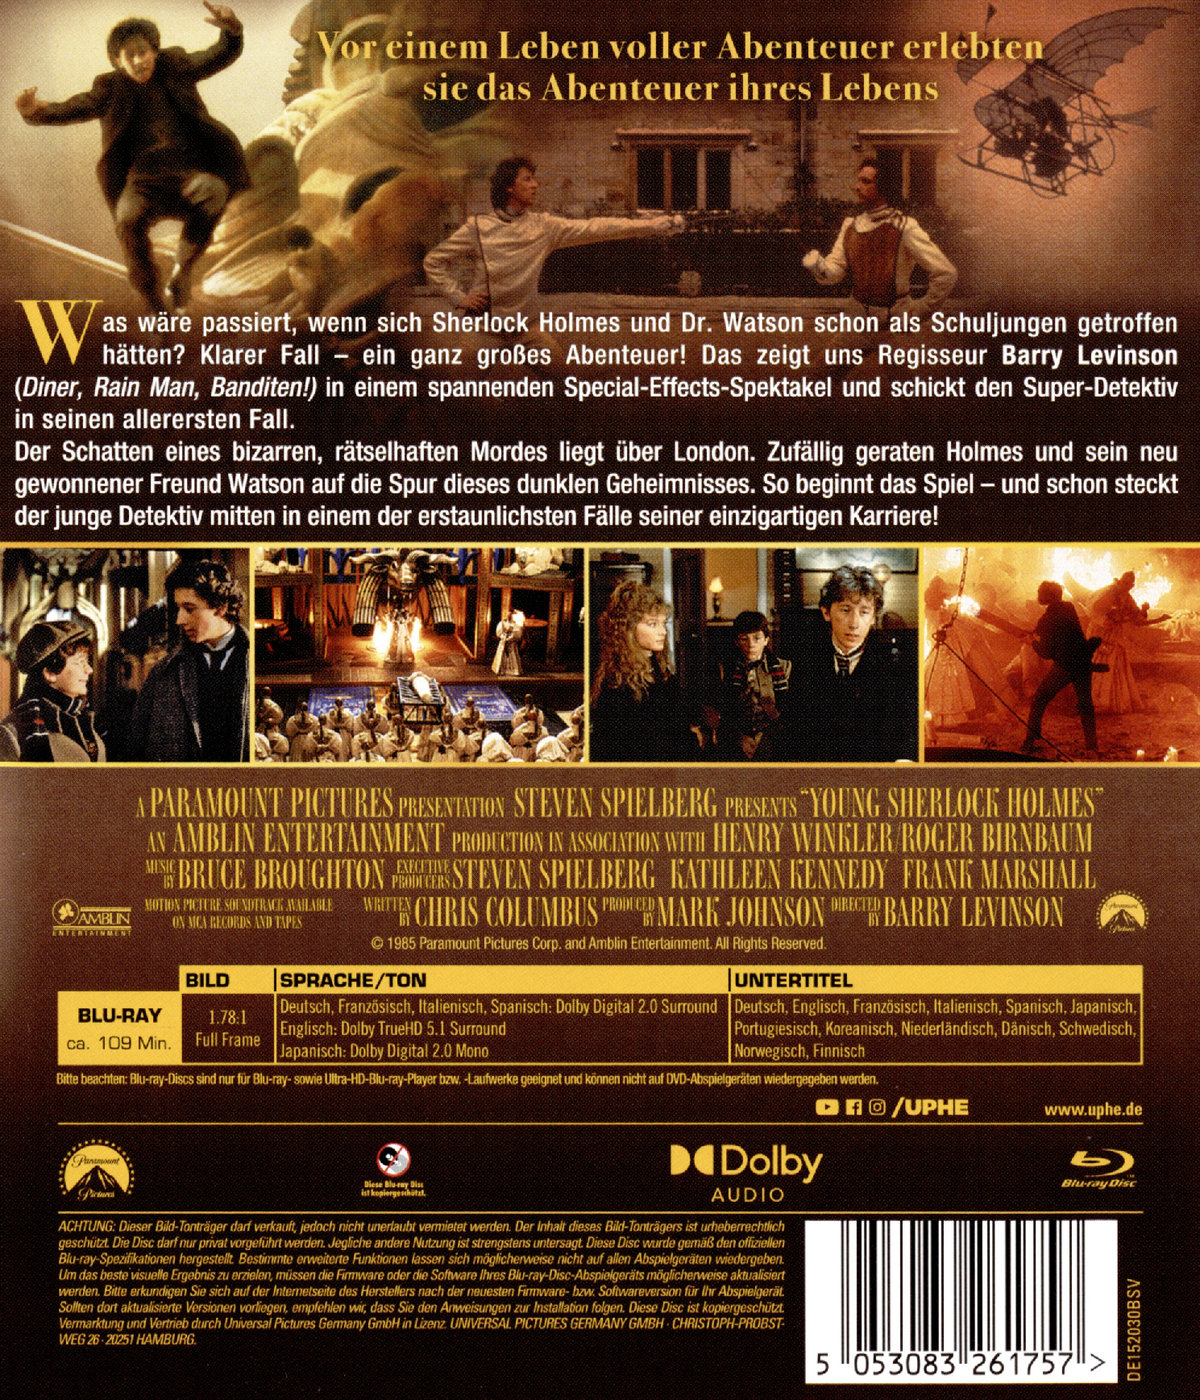 Young Sherlock Holmes - Das Geheimnis des verborgenen Tempels  (Blu-ray Disc)